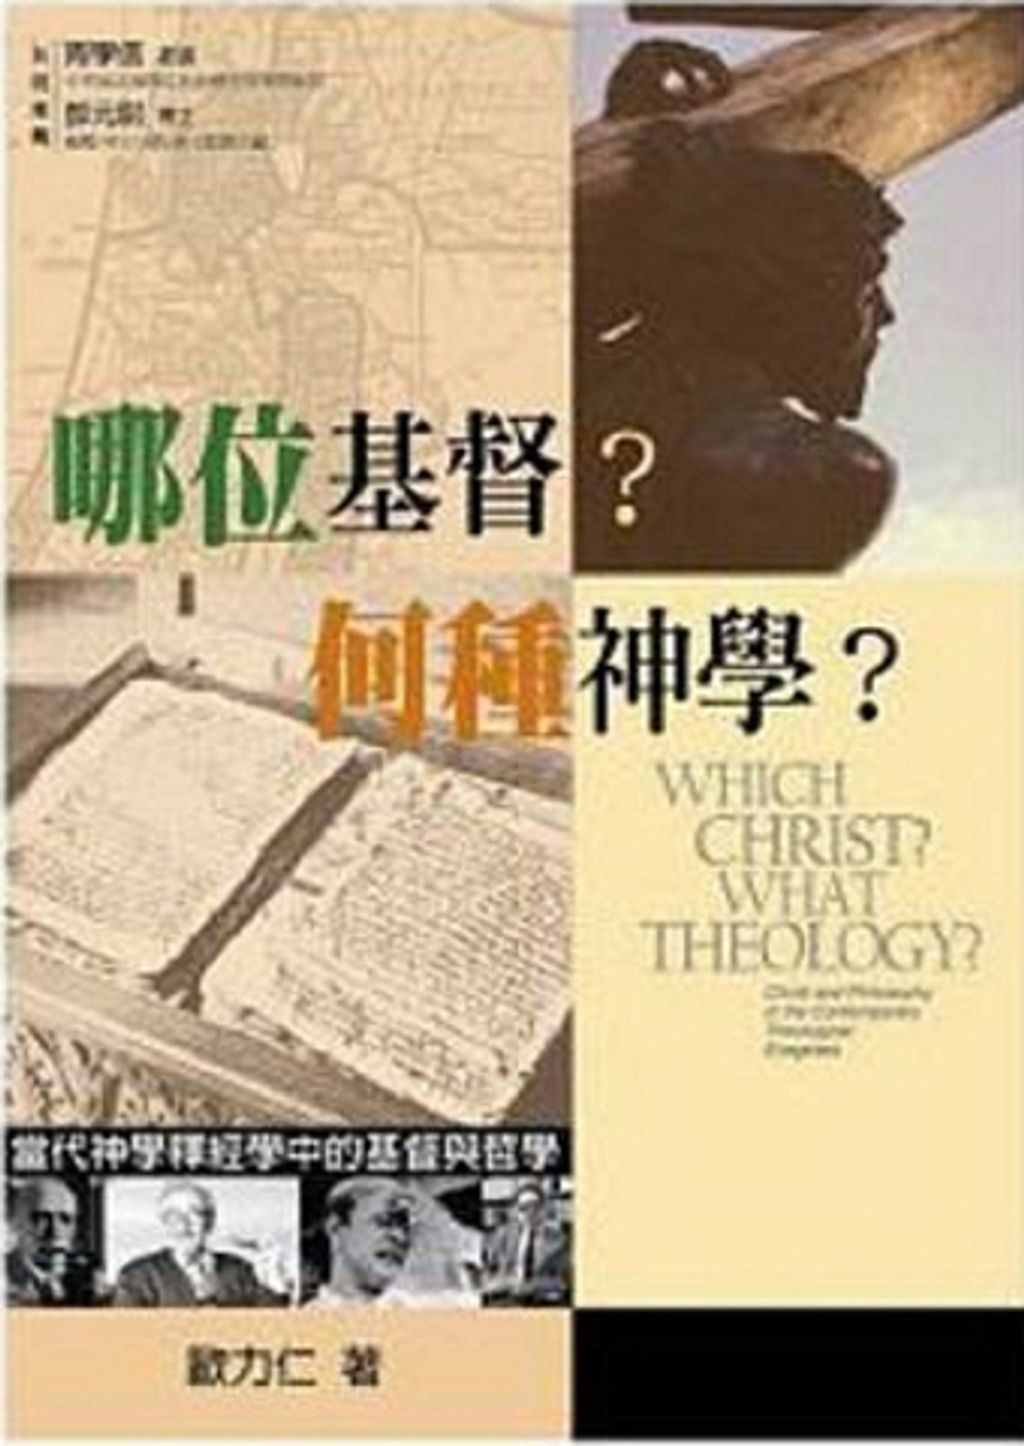 哪位基督？何種神學？－－當代神學釋經學中的基督與哲.jpg